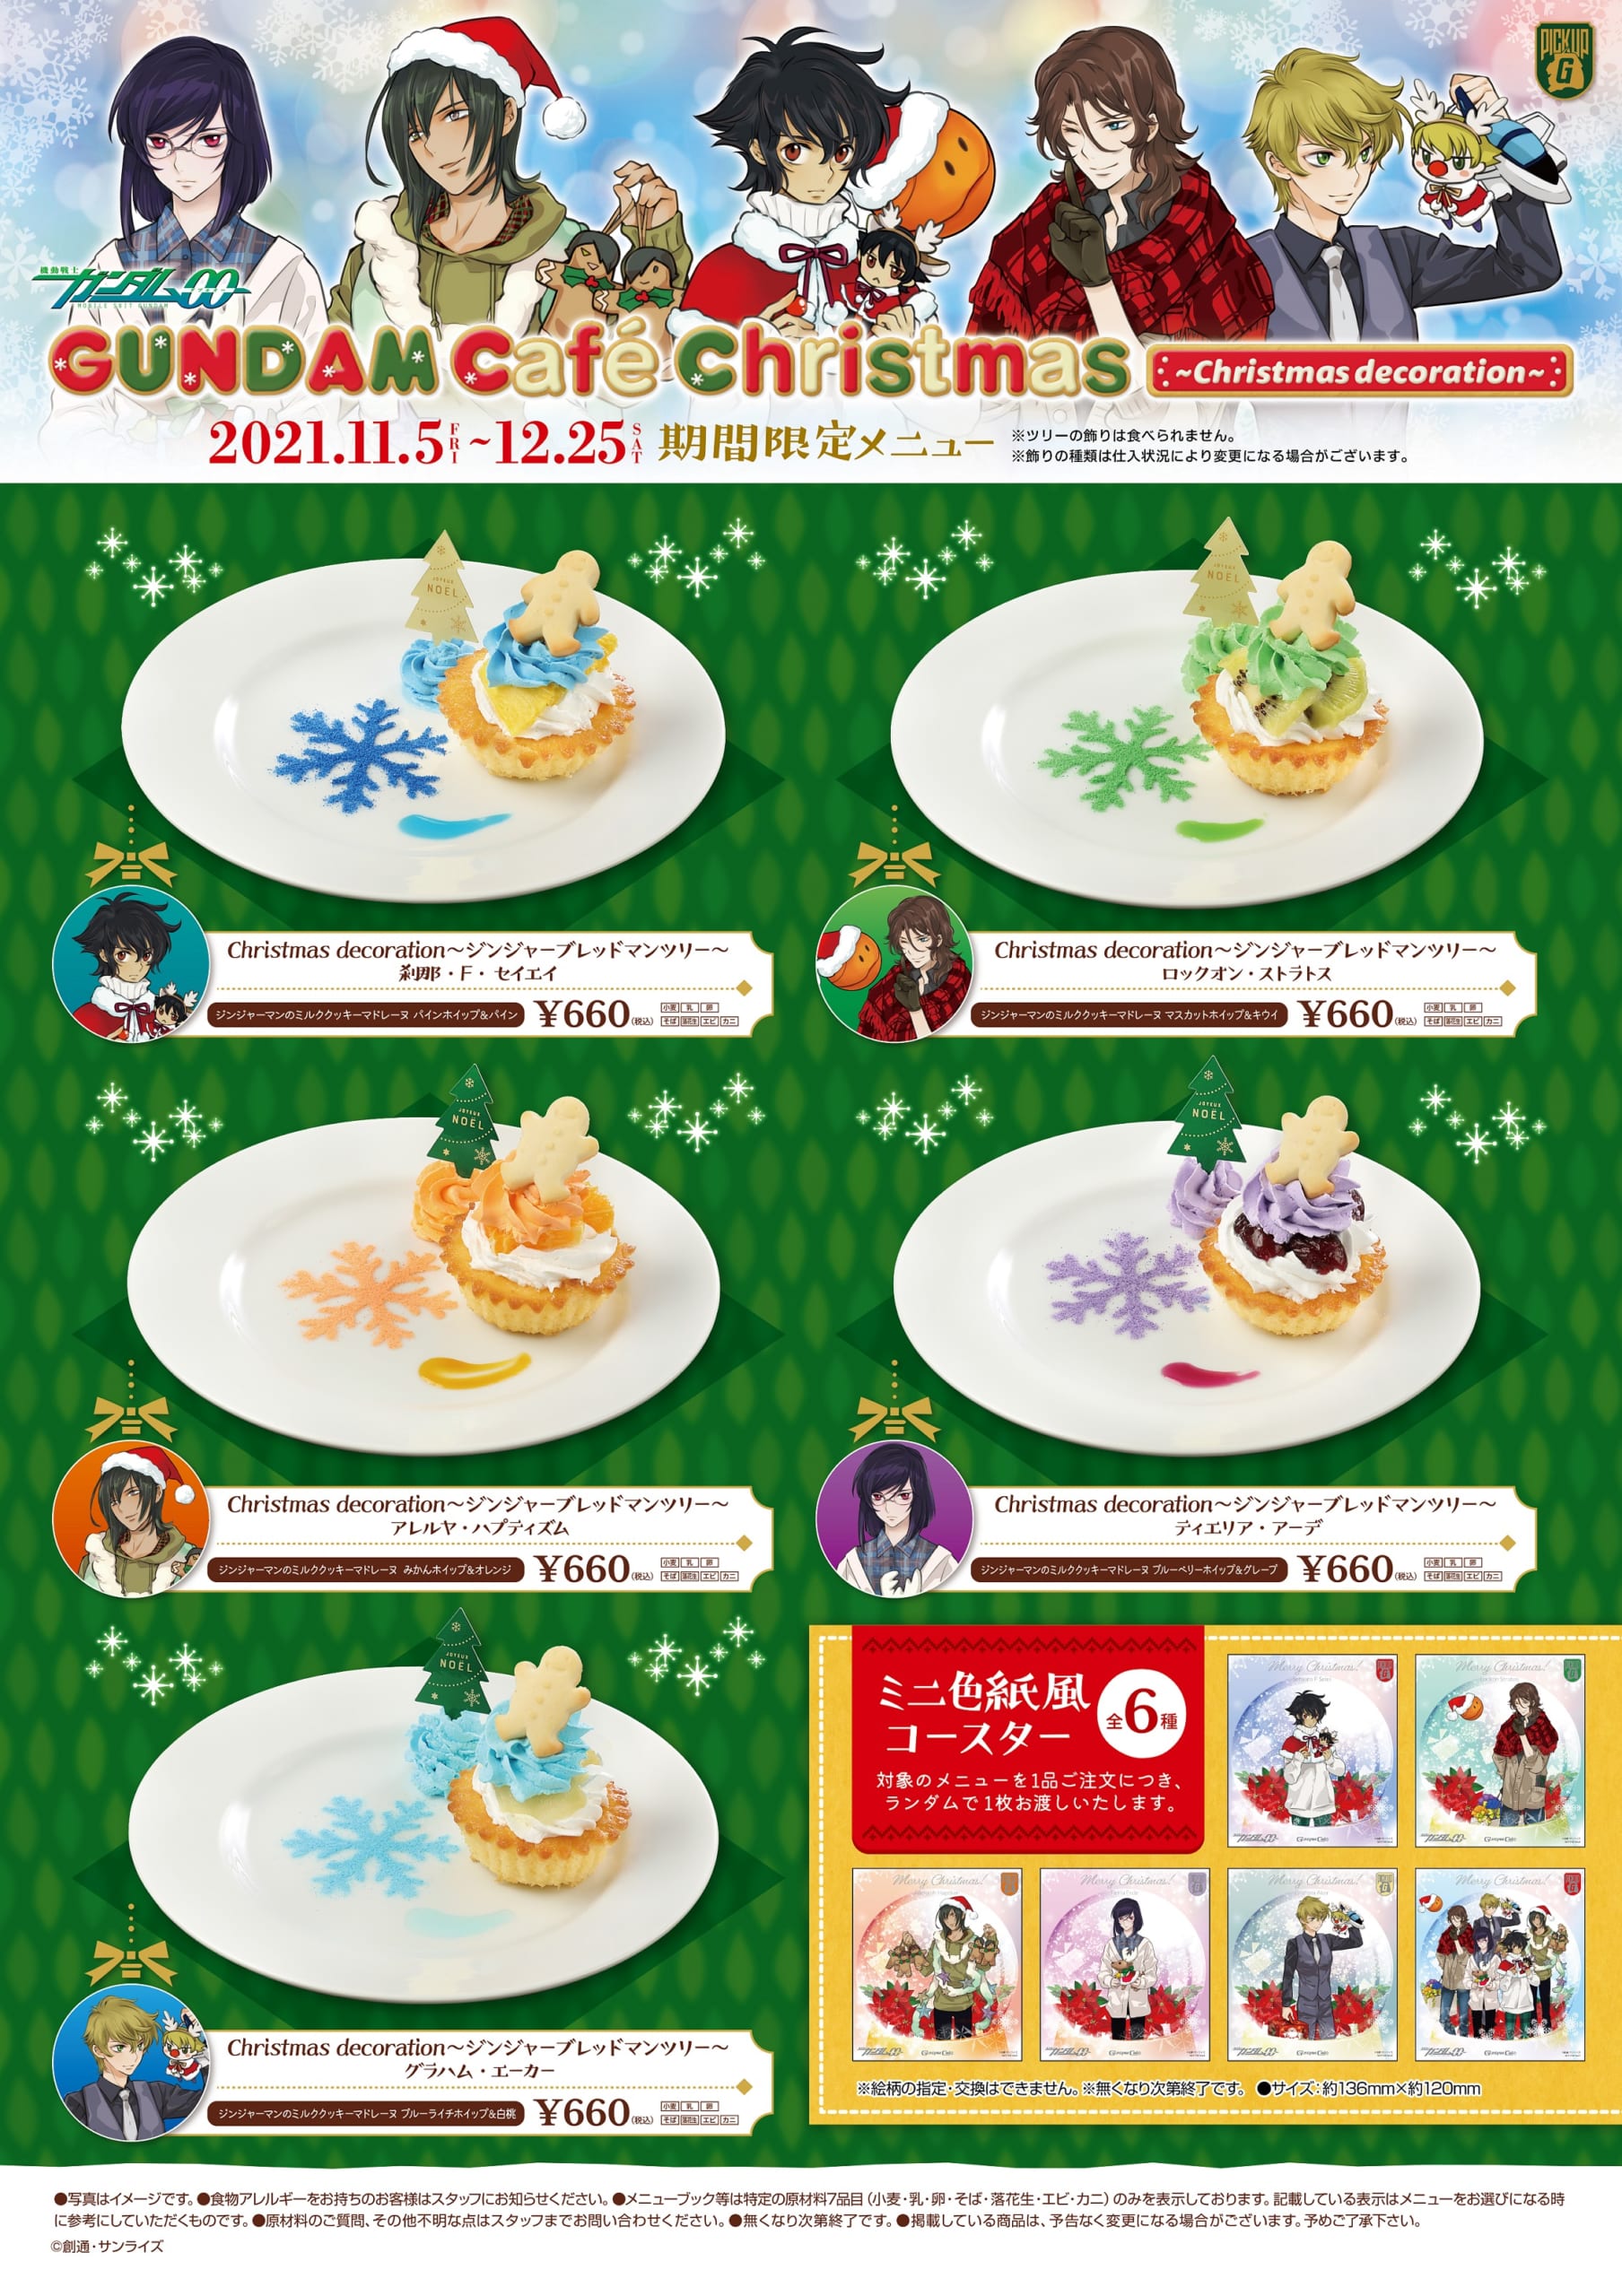 「GUNDAM Café Christmas ～Christmas decoration～」スイーツ